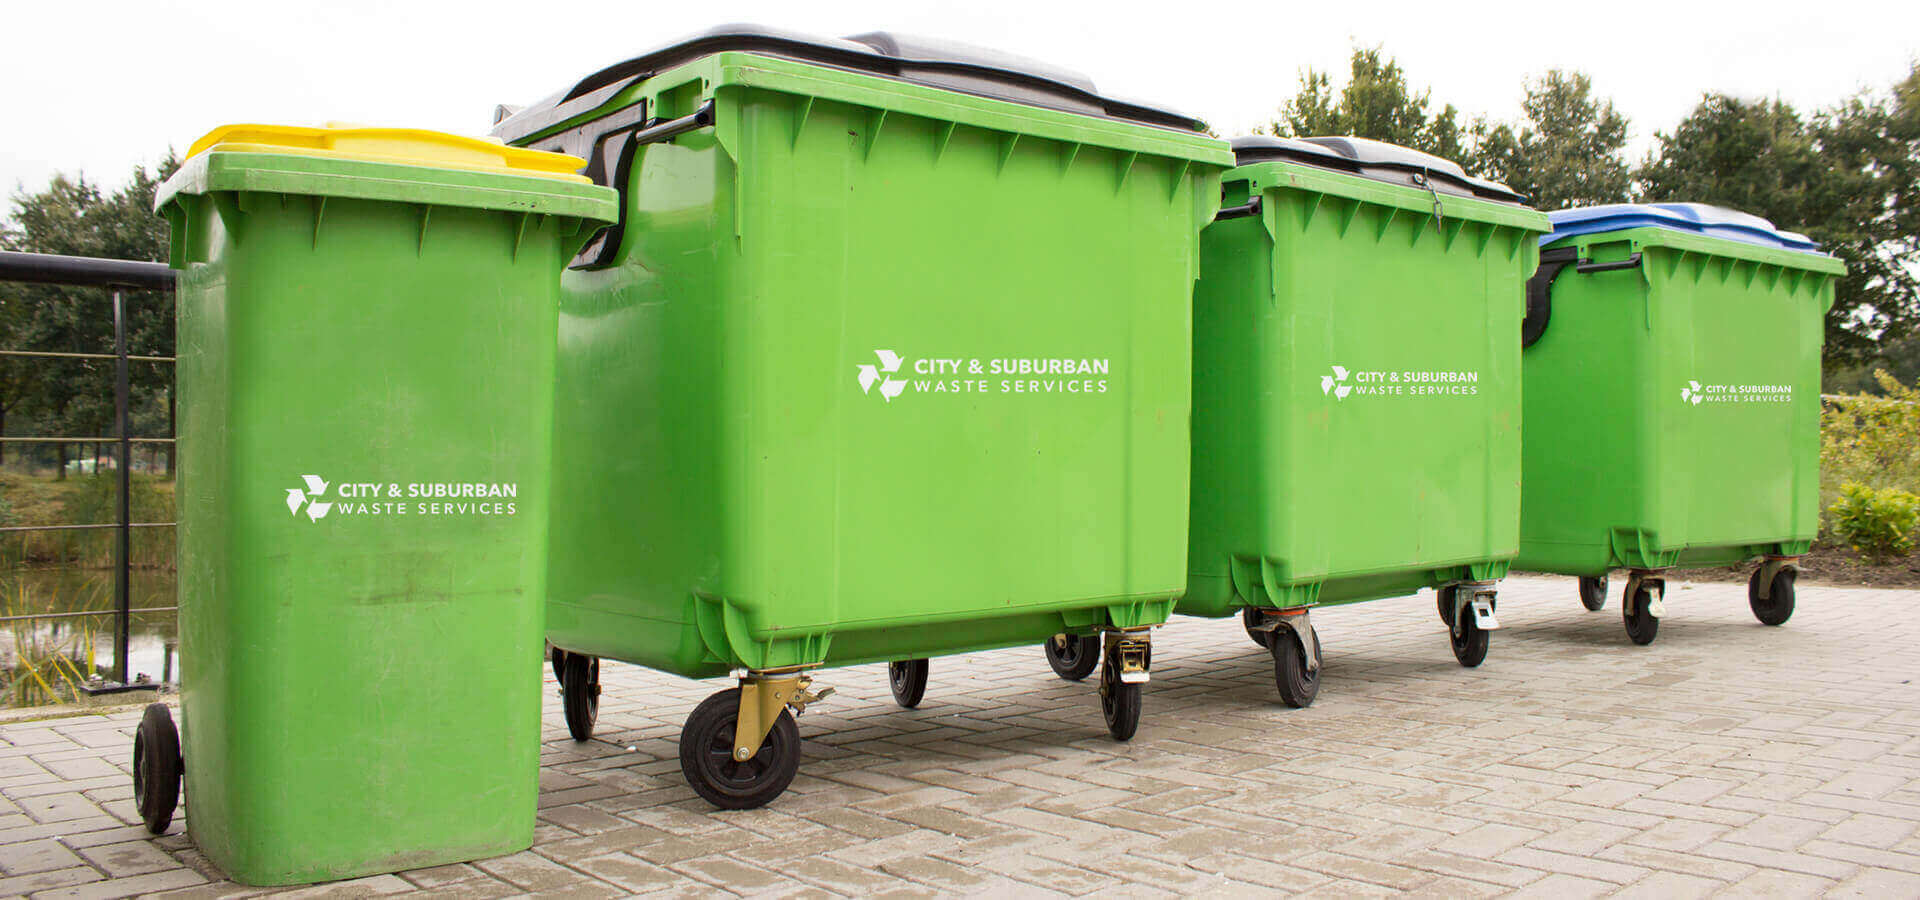 School waste management services